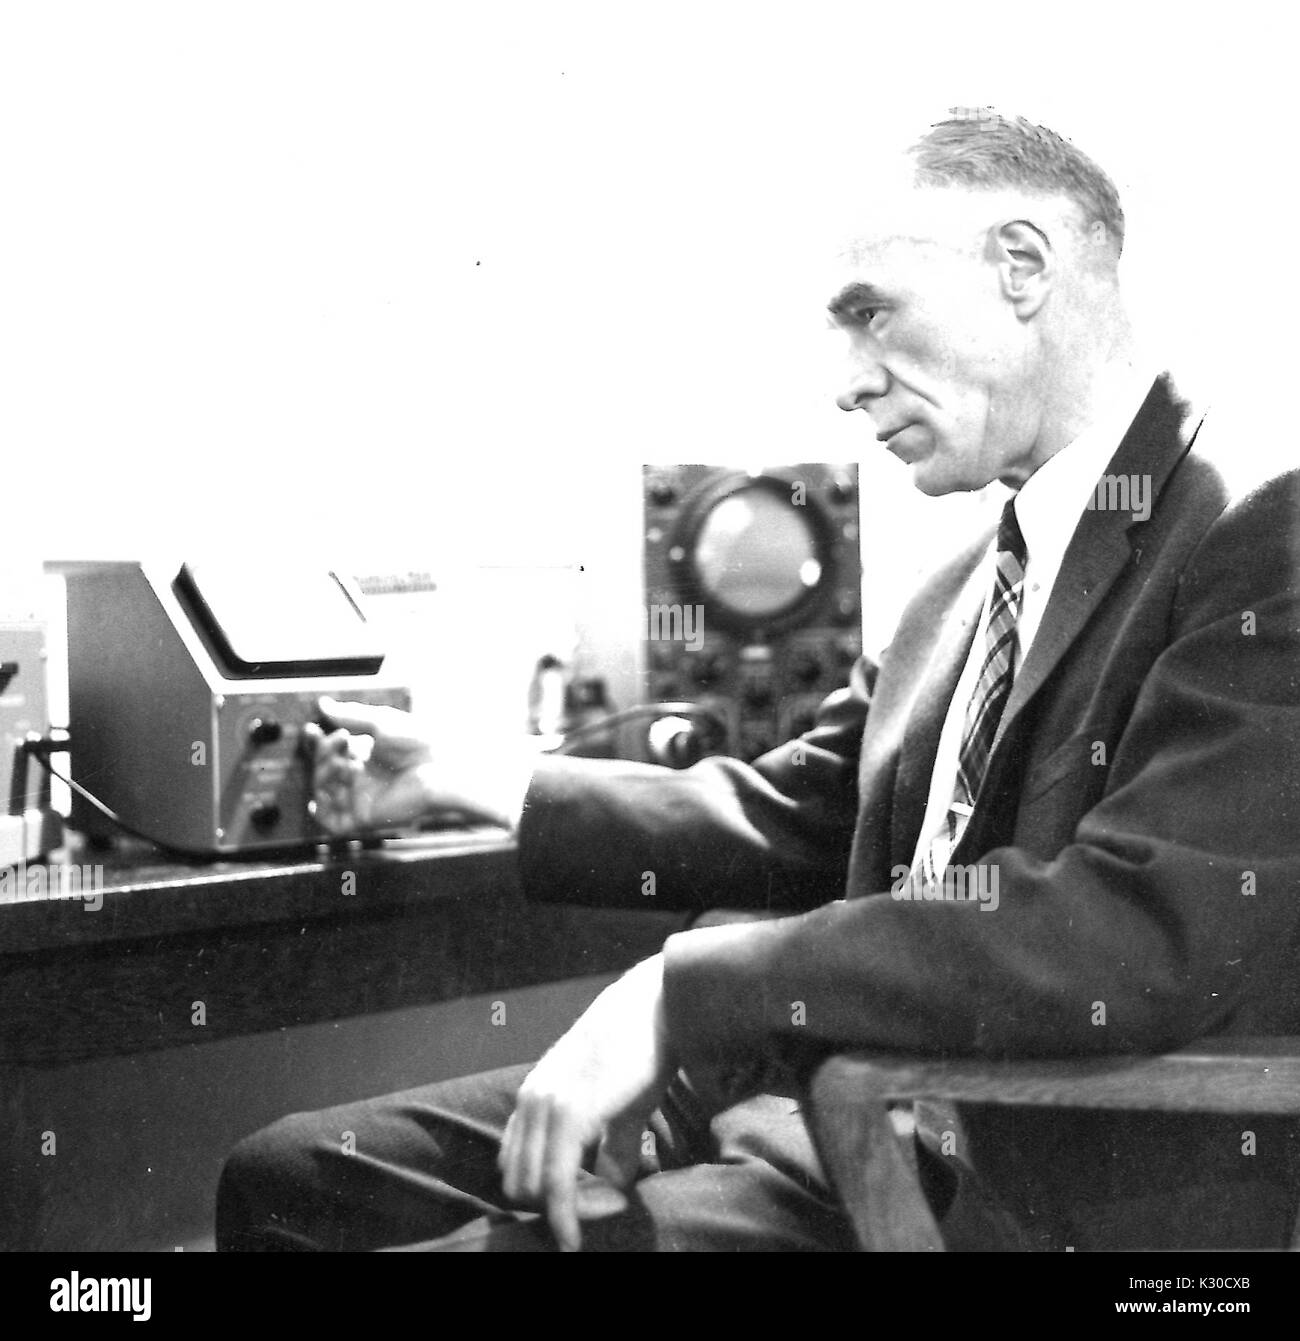 Alsoph Henry Corwin, Professor für Chemie und Abteilung Vorsitzender an der Johns Hopkins University, sitzt auf einem Stuhl in seinem Büro, während er auf ein Instrument von Laborgeräten, intensiv konzentrieren, Baltimore, Maryland, 1959. Stockfoto